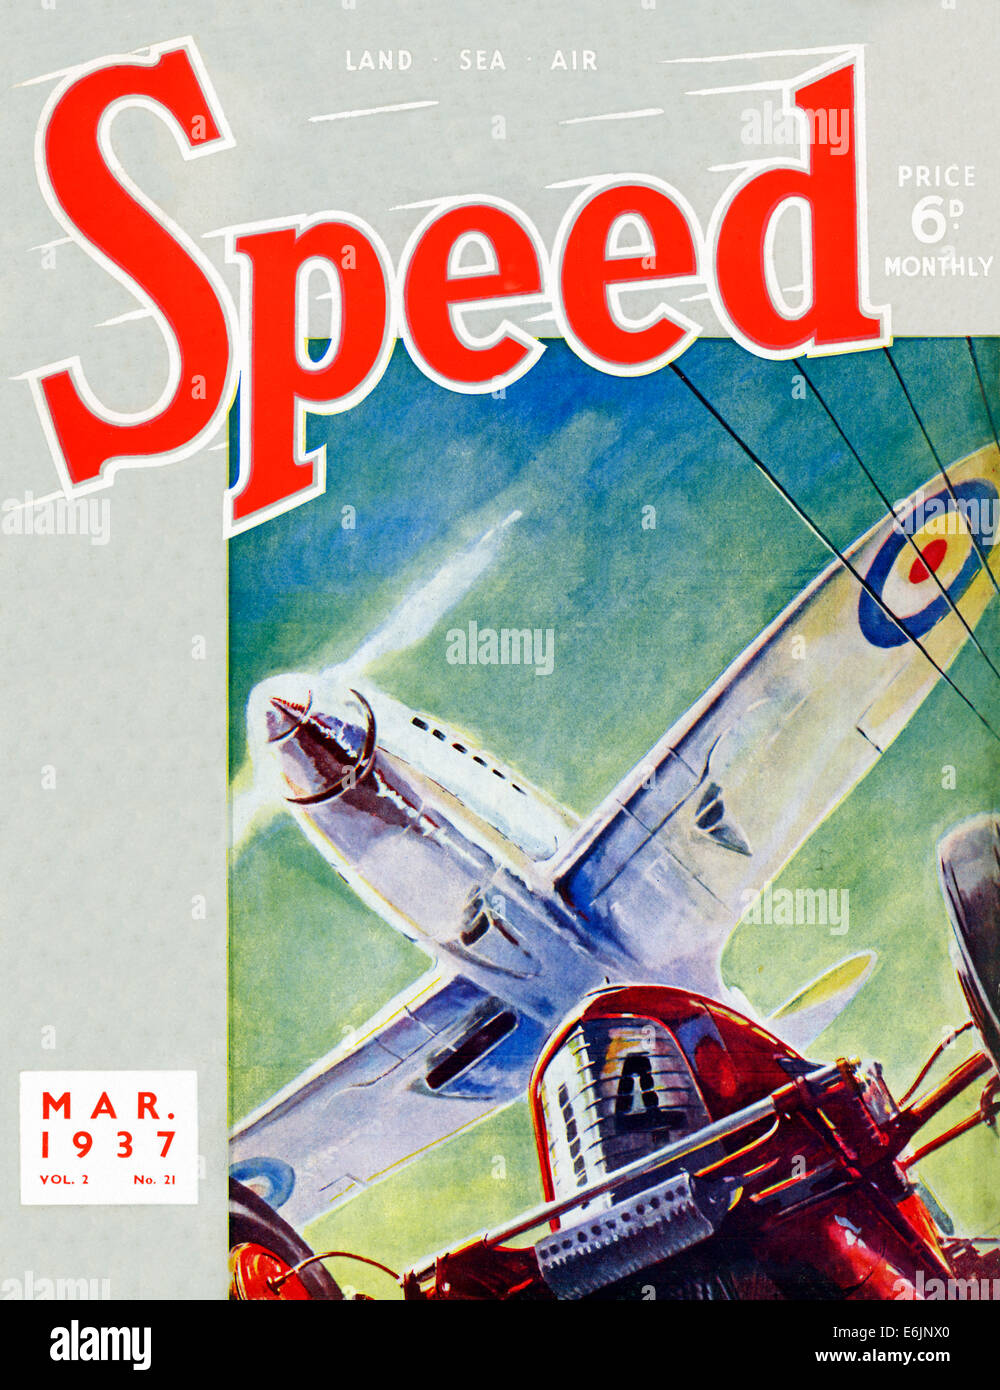 Vitesse, mars 1937 Couverture du magazine anglais motor sports avec un chasseur Spitfire volant au-dessus d'une voiture de course Banque D'Images